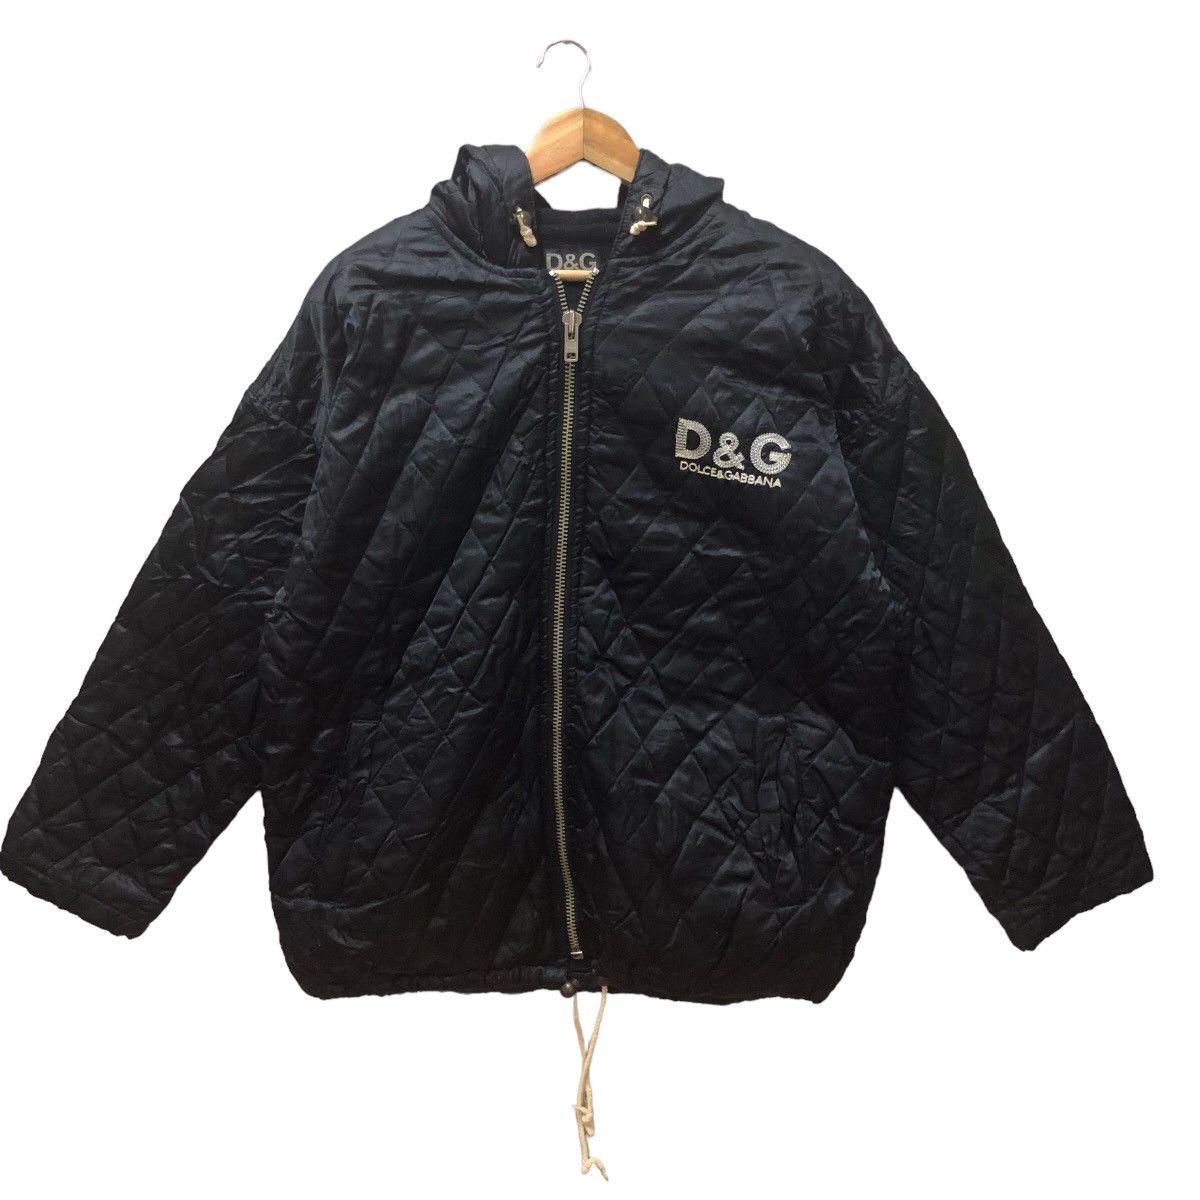 Vintage d&g big embroidery logo qulited hoodie jacket - 2